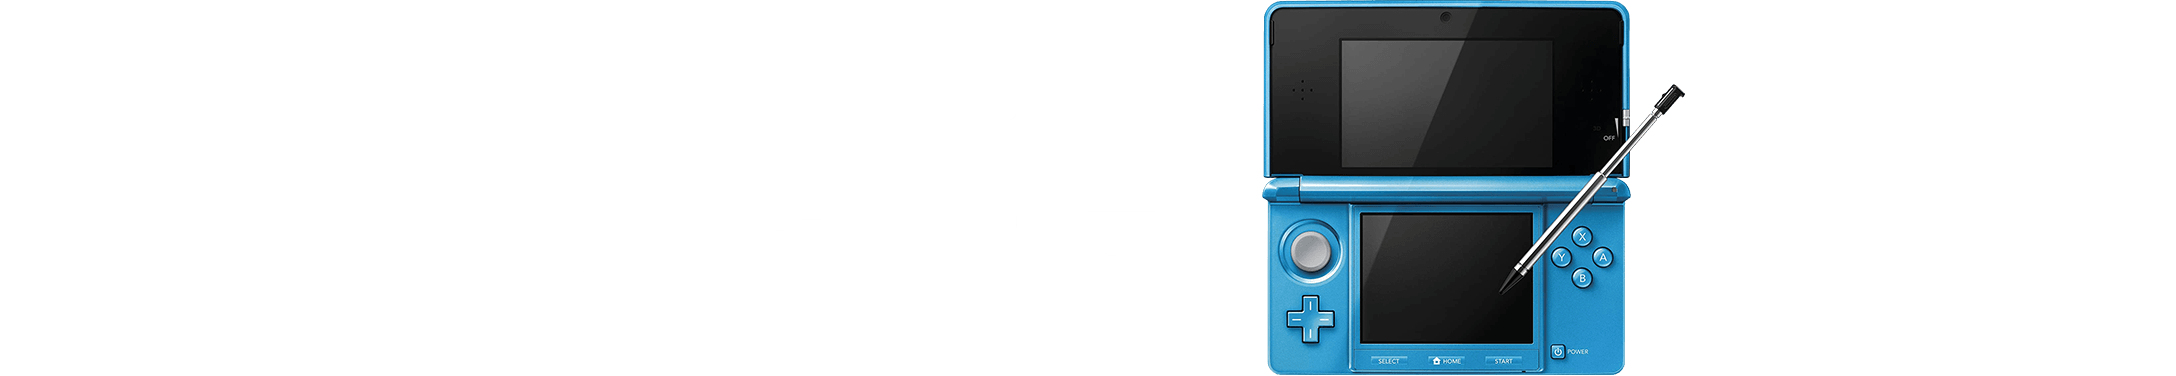 ニンテンドー 3DS 売るならゲーム王国